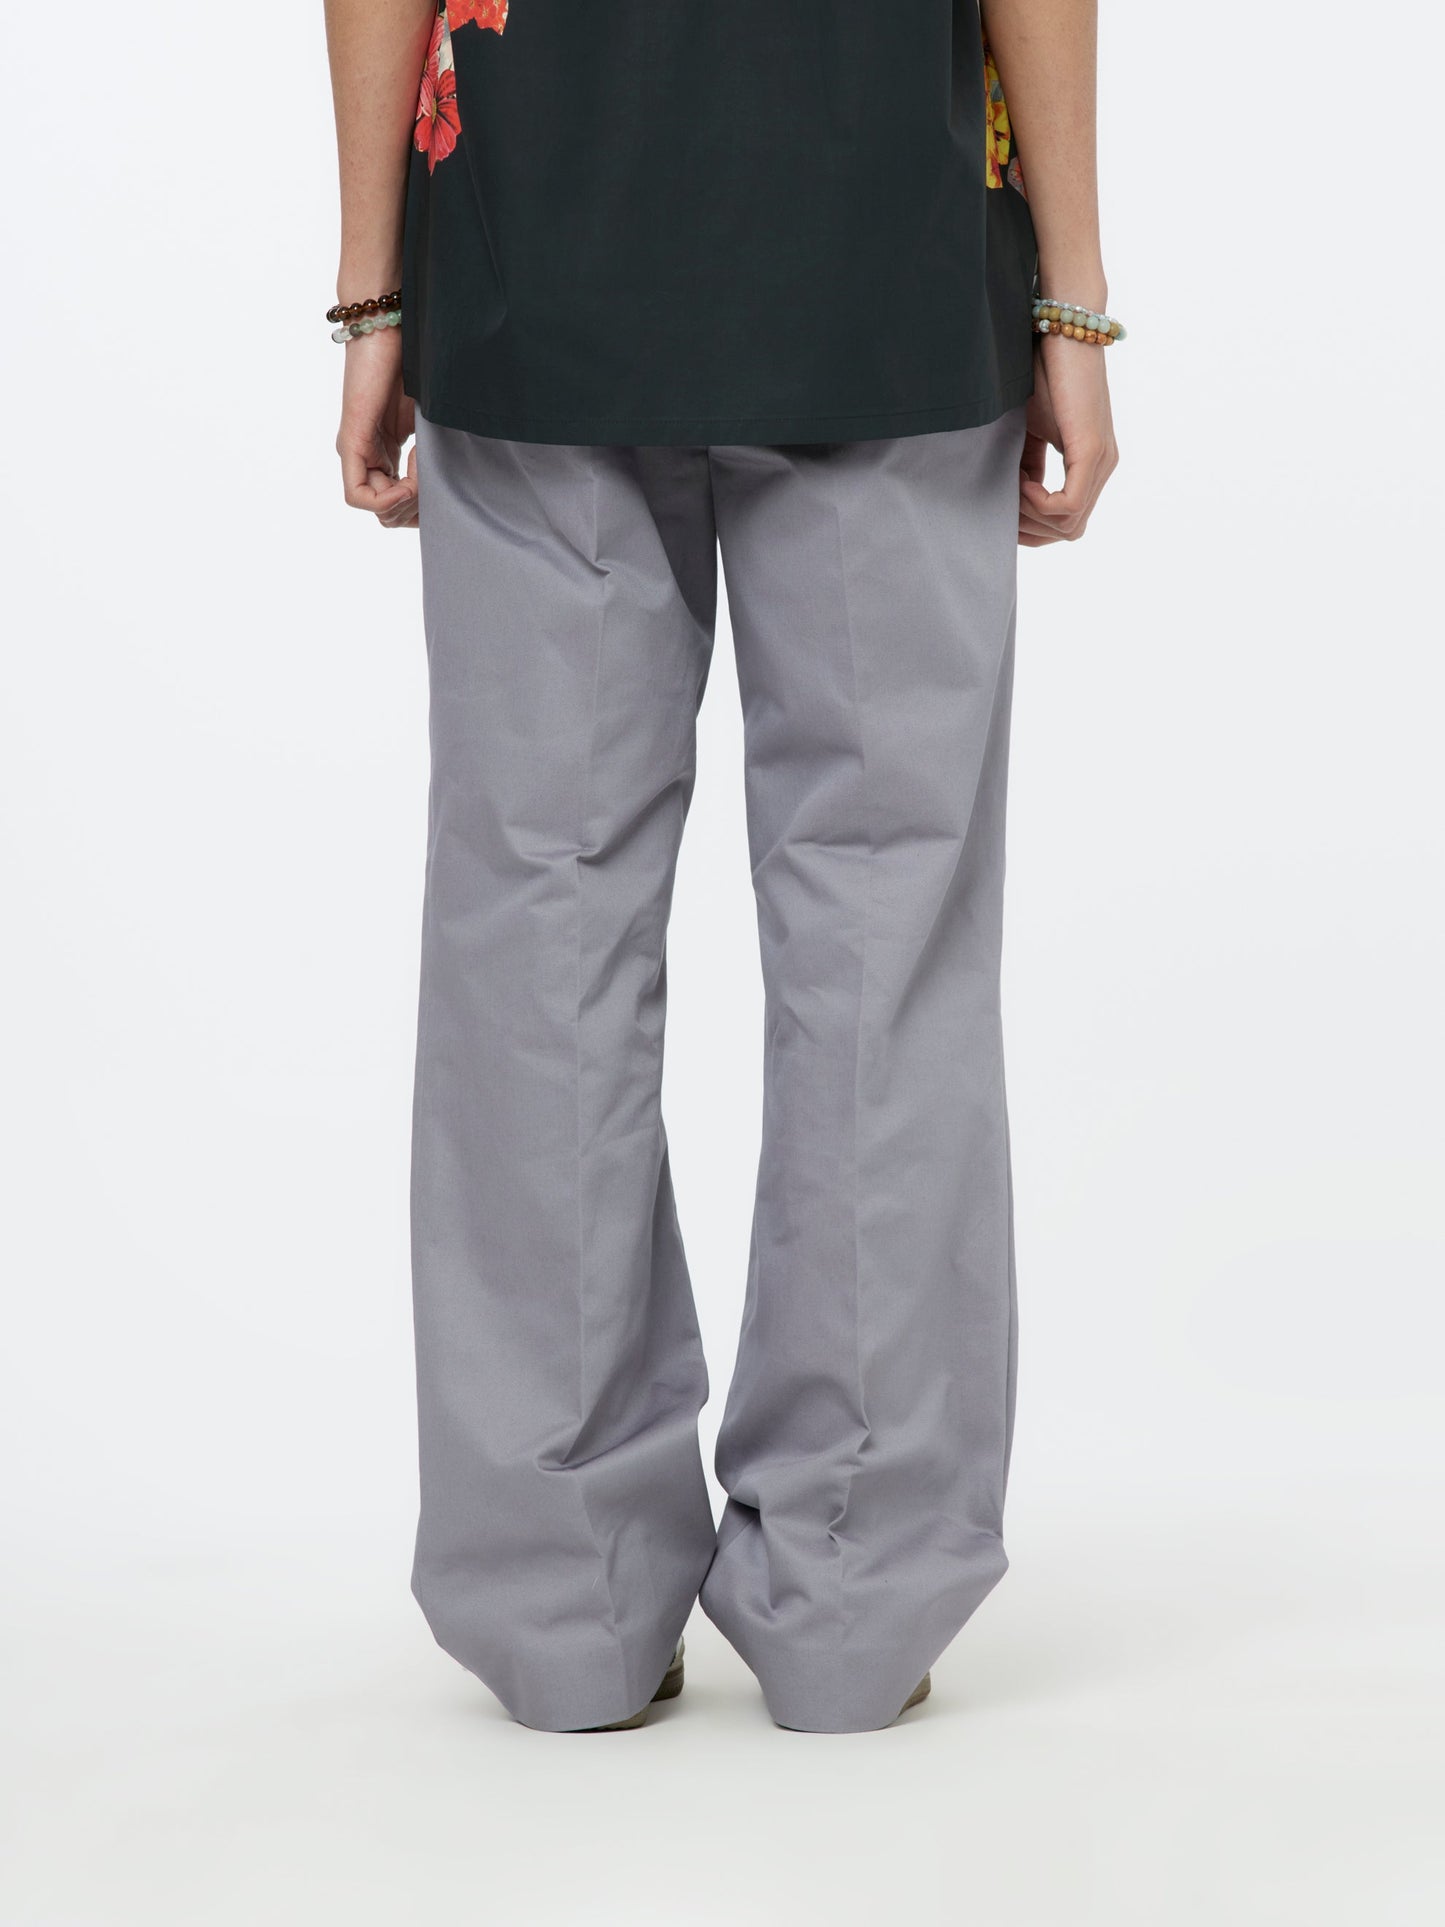 Leather Lace Chino Pants (Mercury)